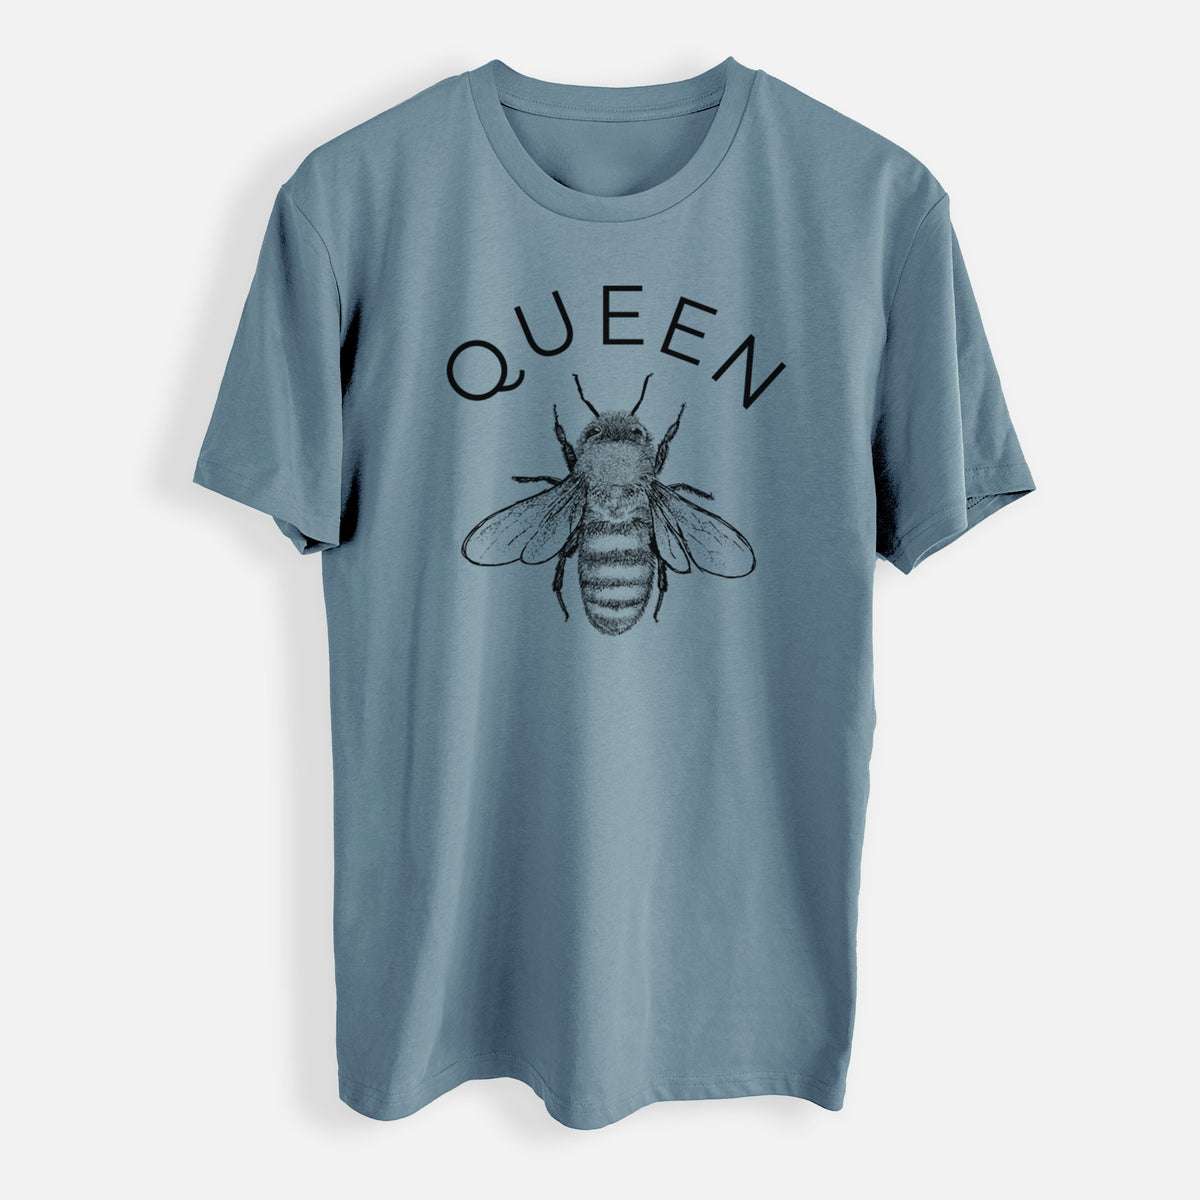 Queen Bee - Mens Everyday Staple Tee